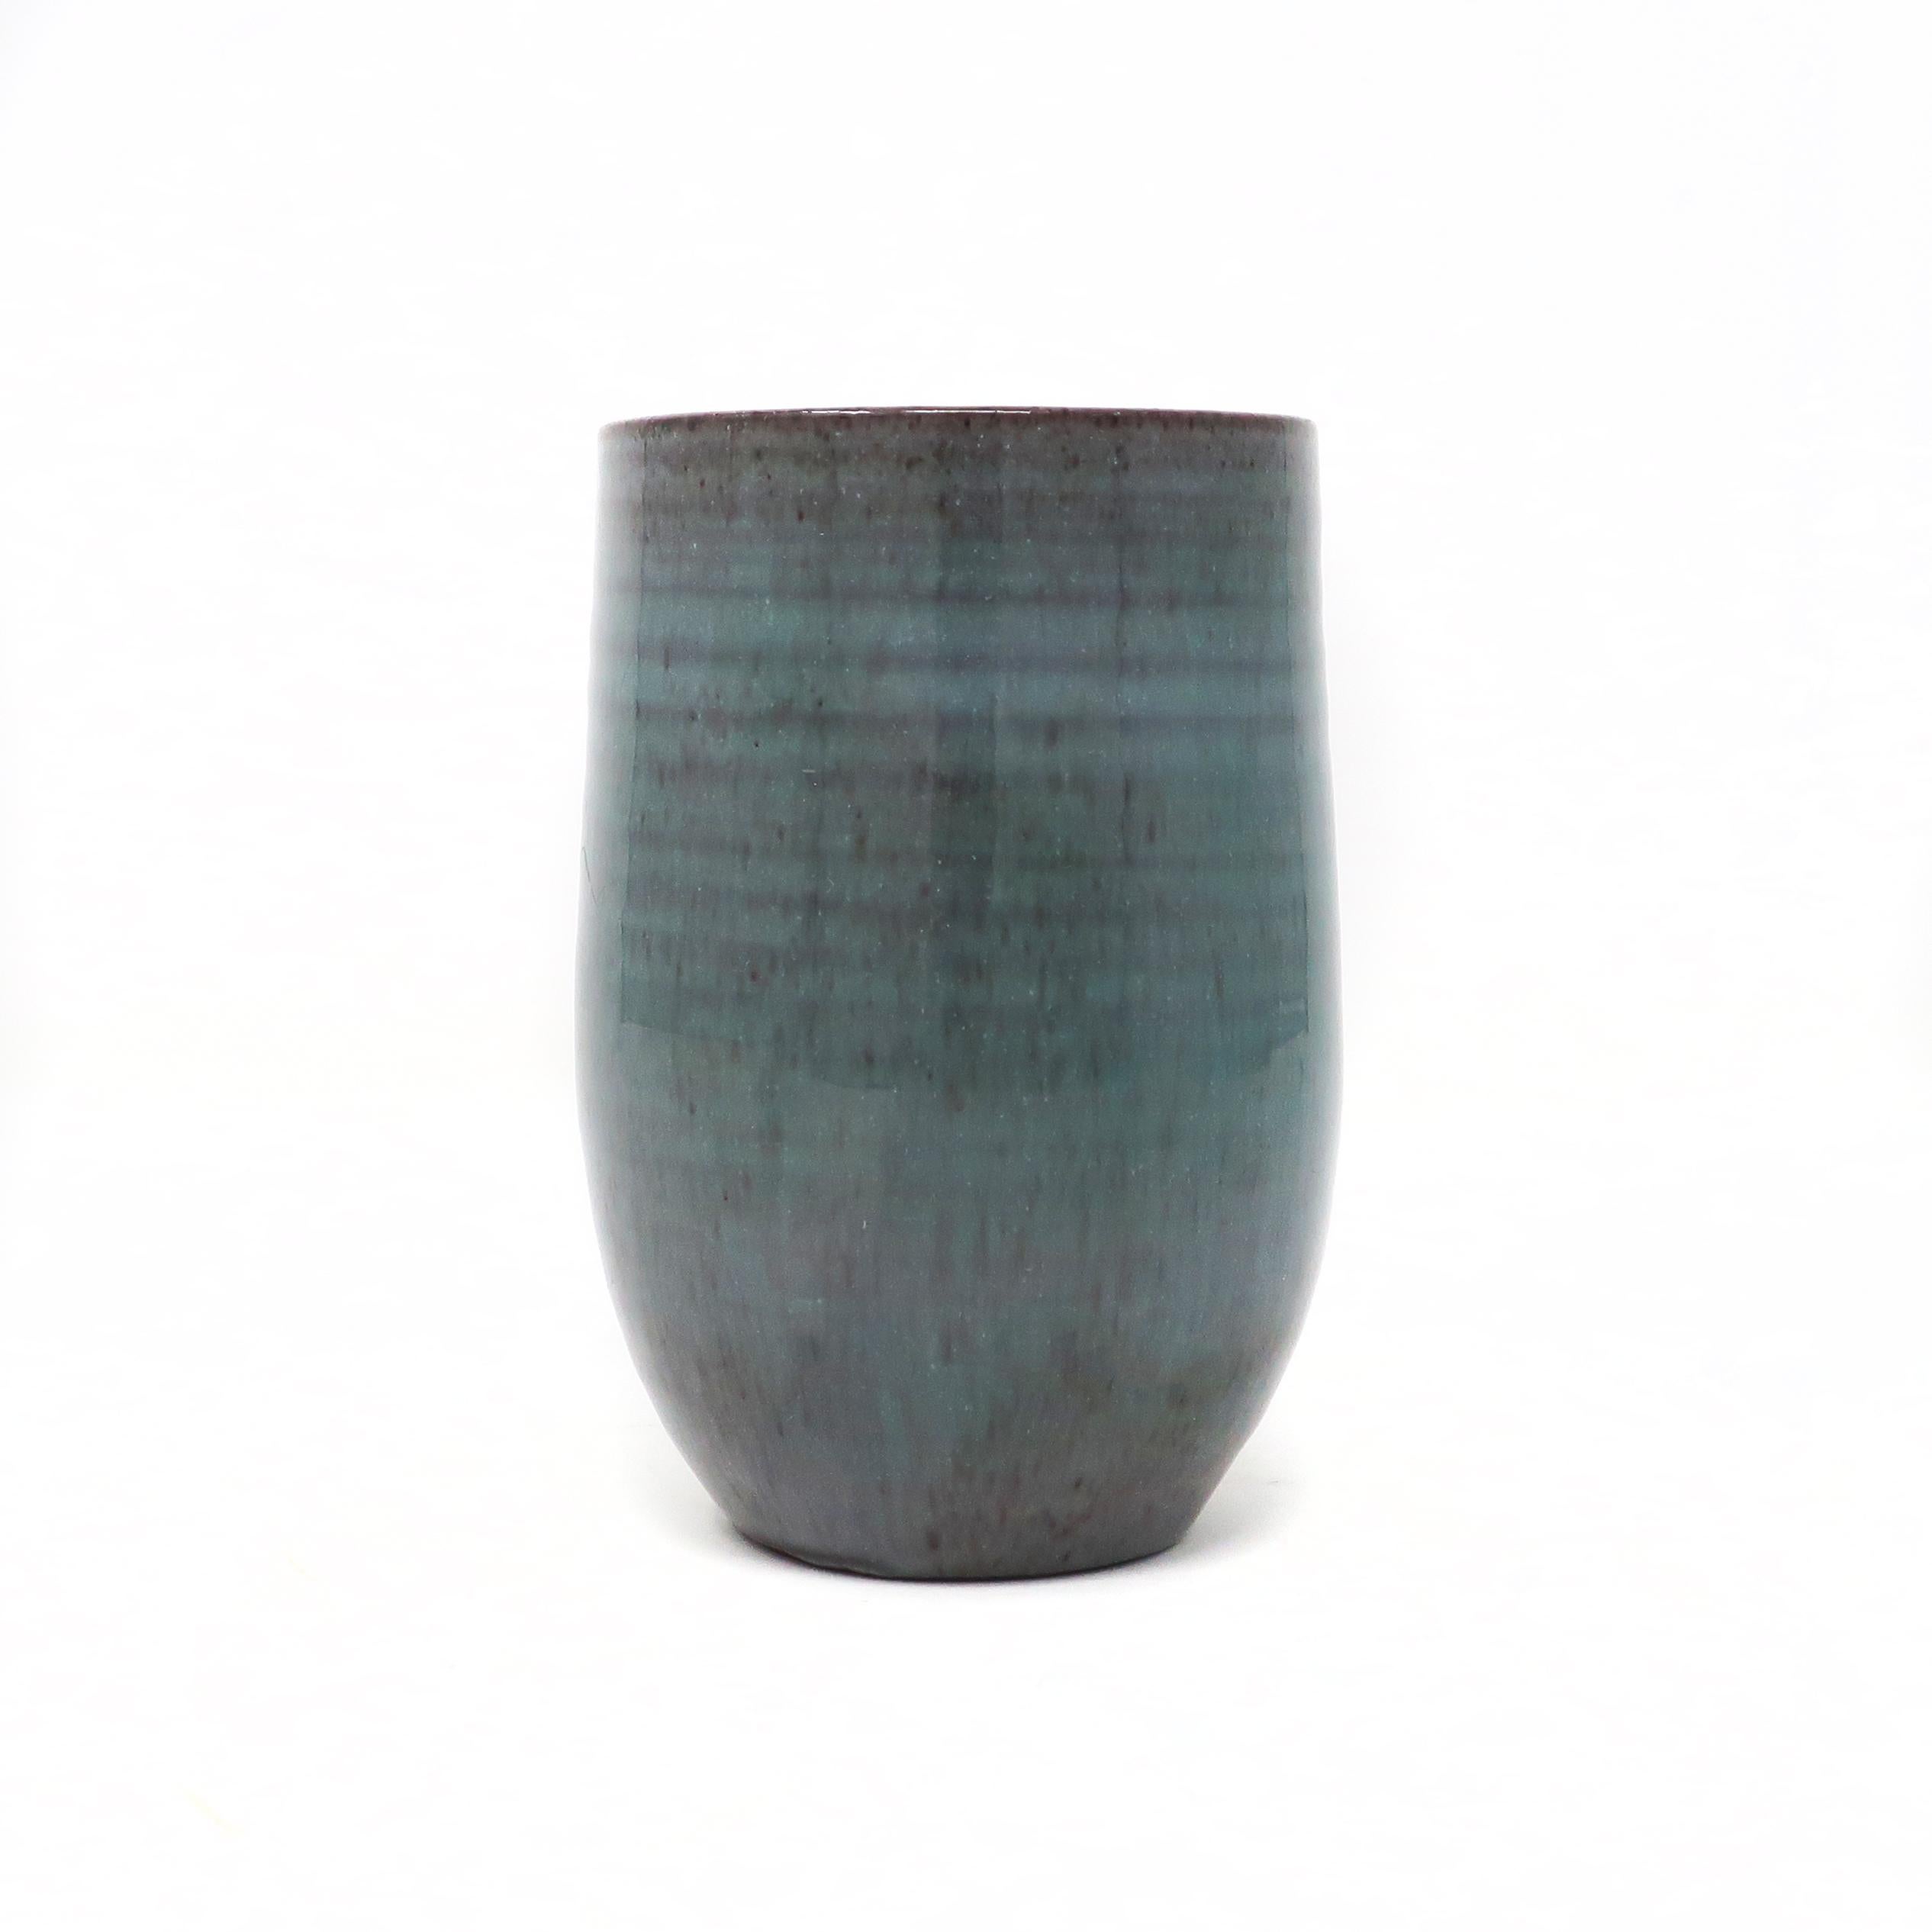 Une jolie tasse en céramique turquoise par Edwin & Mary Scheier, l'un des couples les plus connus à avoir travaillé dans la poterie. Edwin (1910-2008) et Mary (1908-2007) ont commencé à créer ensemble dans les années 1930. Cette pièce présente une